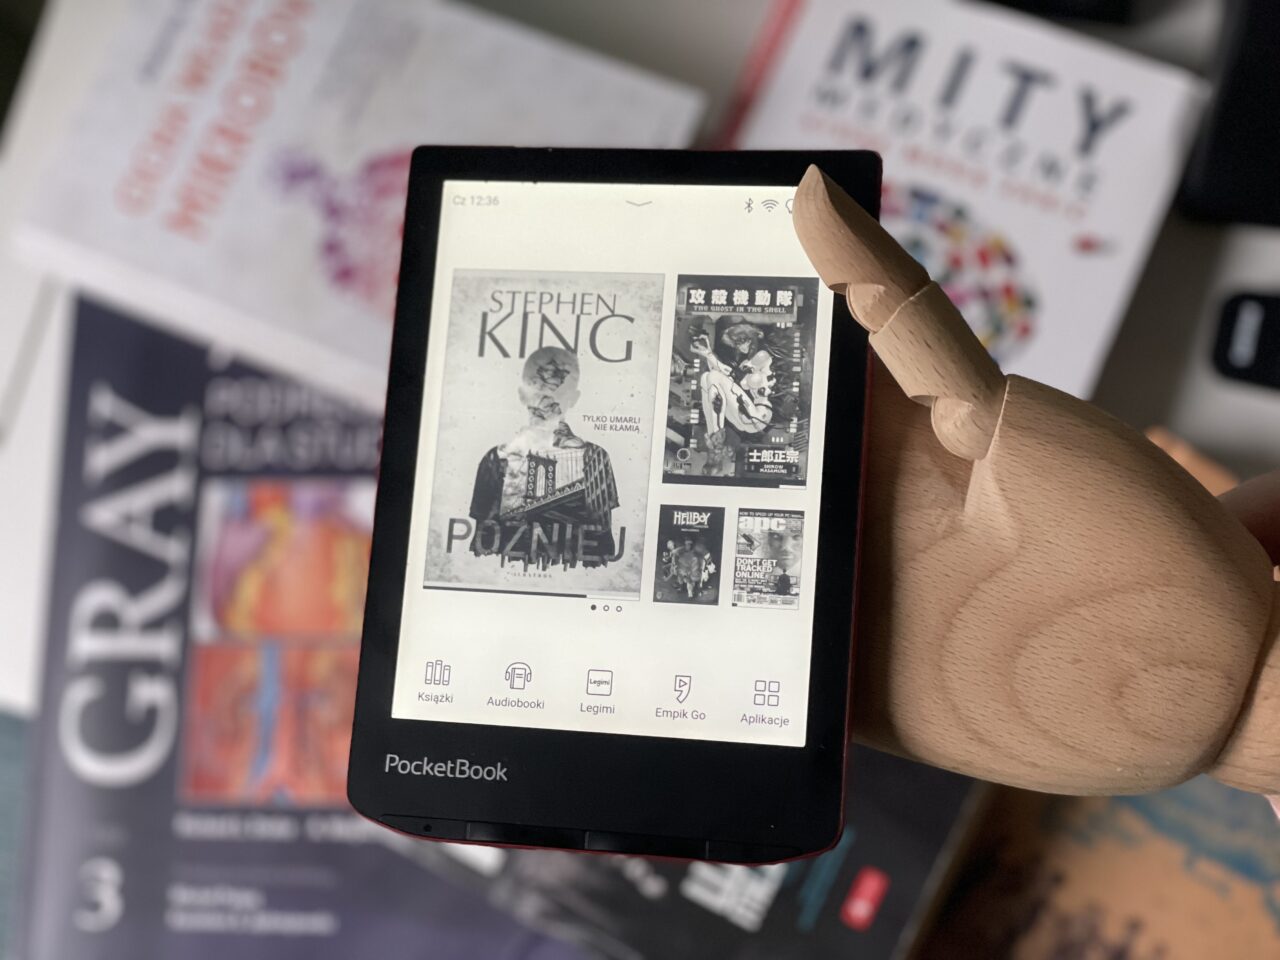 Czytak elektroniczny PocketBook trzymany przez drewnianą rękę, na ekranie widoczne okładki e-książek, w tym "Później" Stephena Kinga, otoczony przez inne przedmioty, takie jak książki i czasopisma rozłożone w nieładzie.